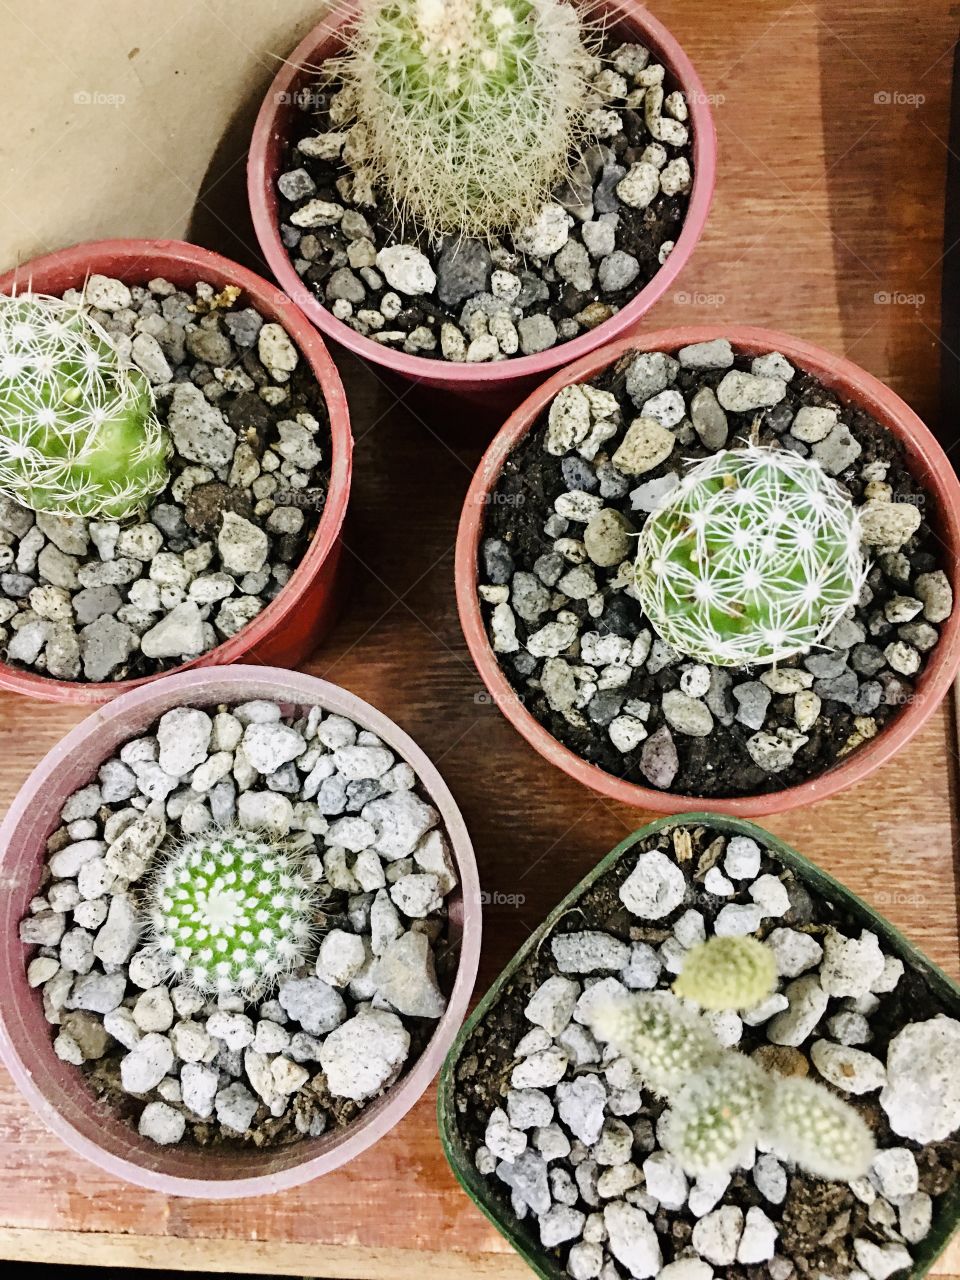 Cactus babies